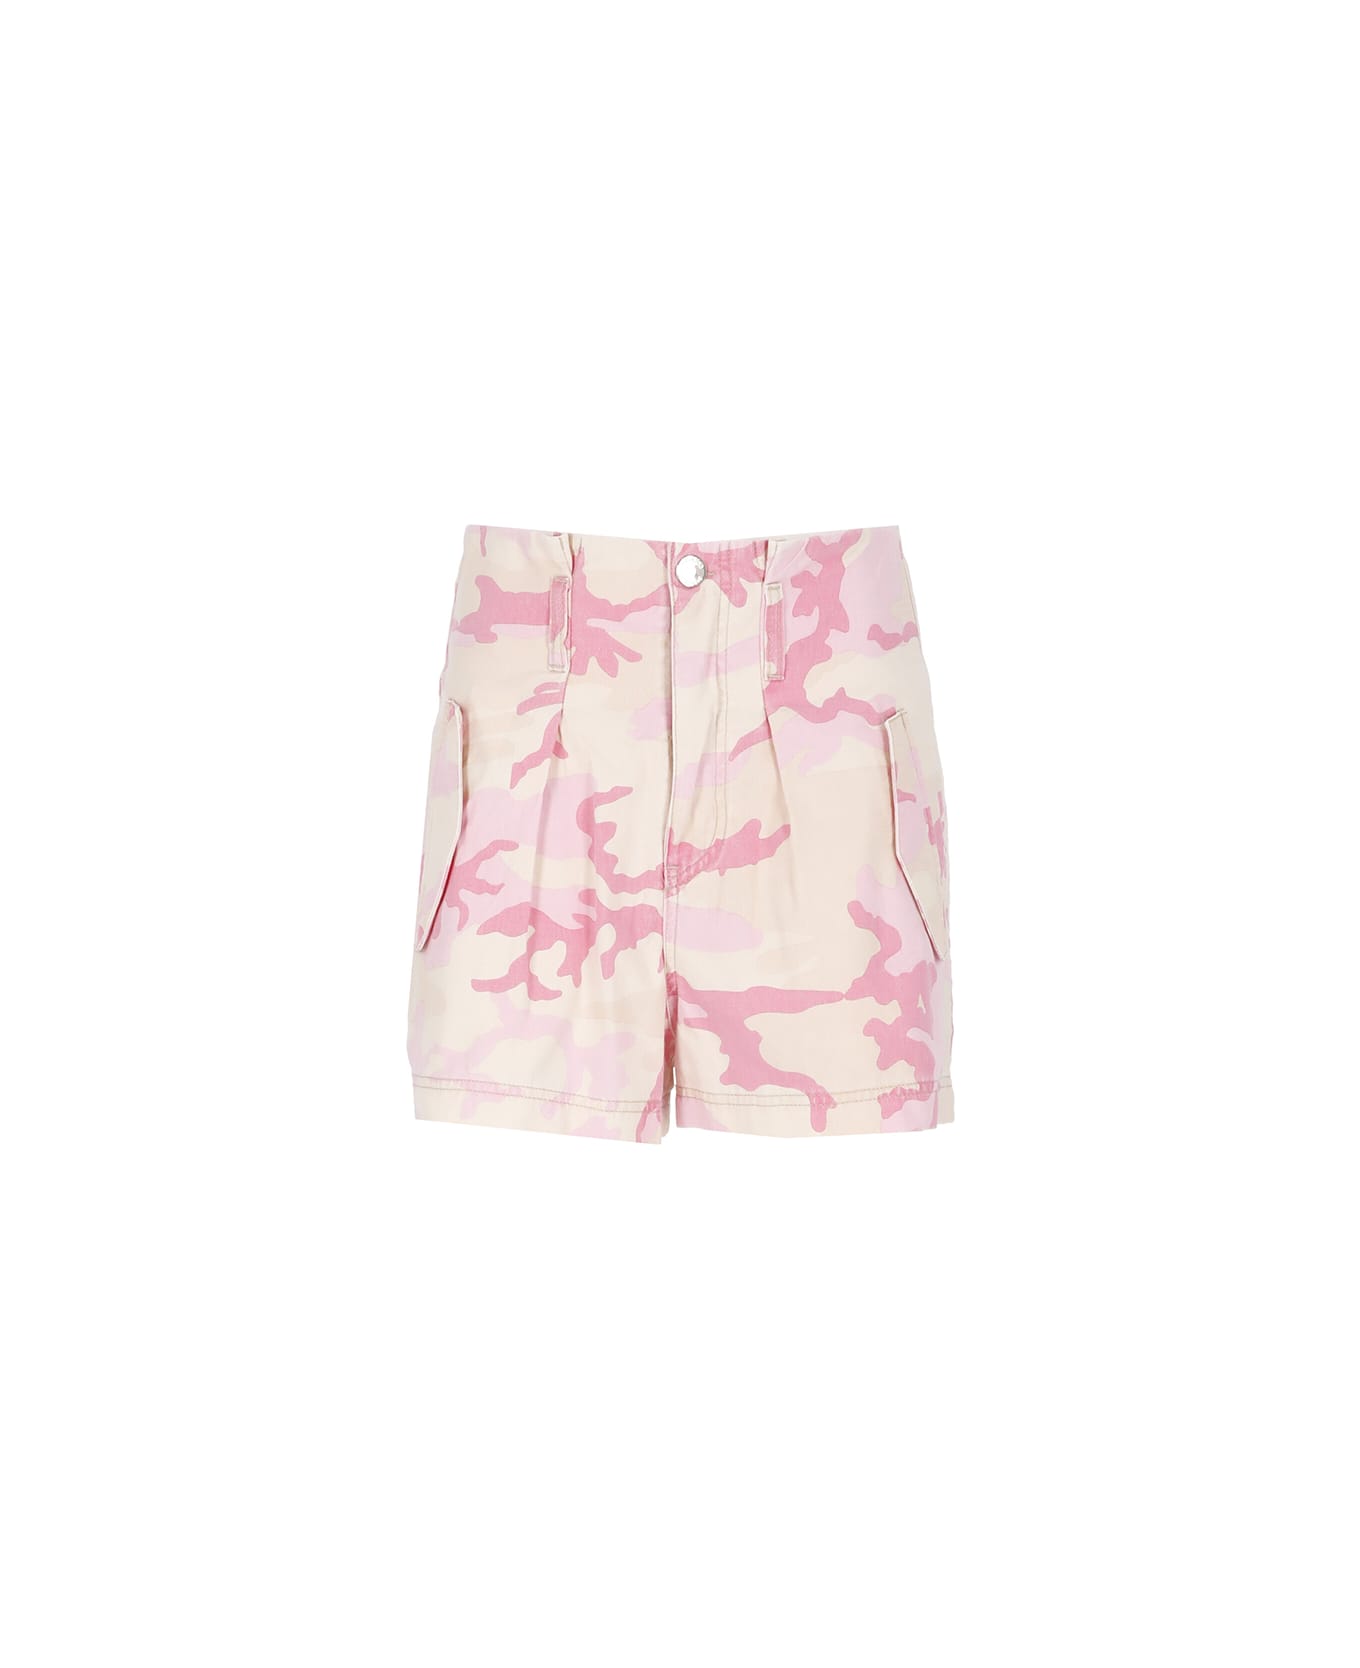 Pinko Golf Printed Cotton Shorts - Pink